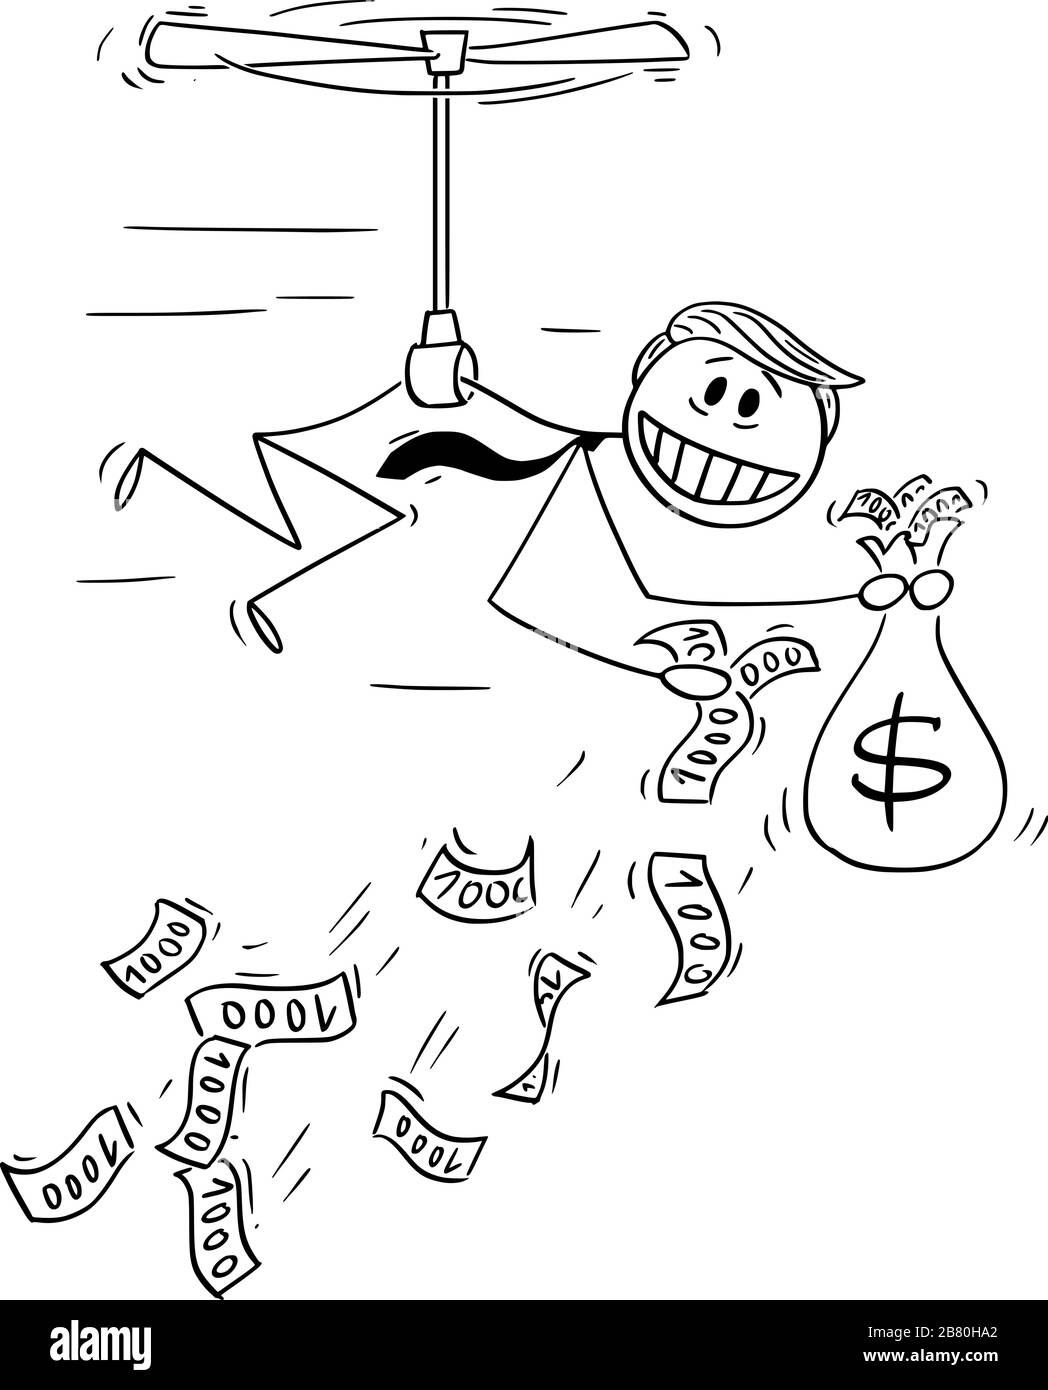 Illustrazione vettoriale del presidente americano Donald Trump che ha buttato via denaro, utilizzando denaro in elicottero o quantitative easing durante la recessione.Marzo 19,2020. Illustrazione Vettoriale